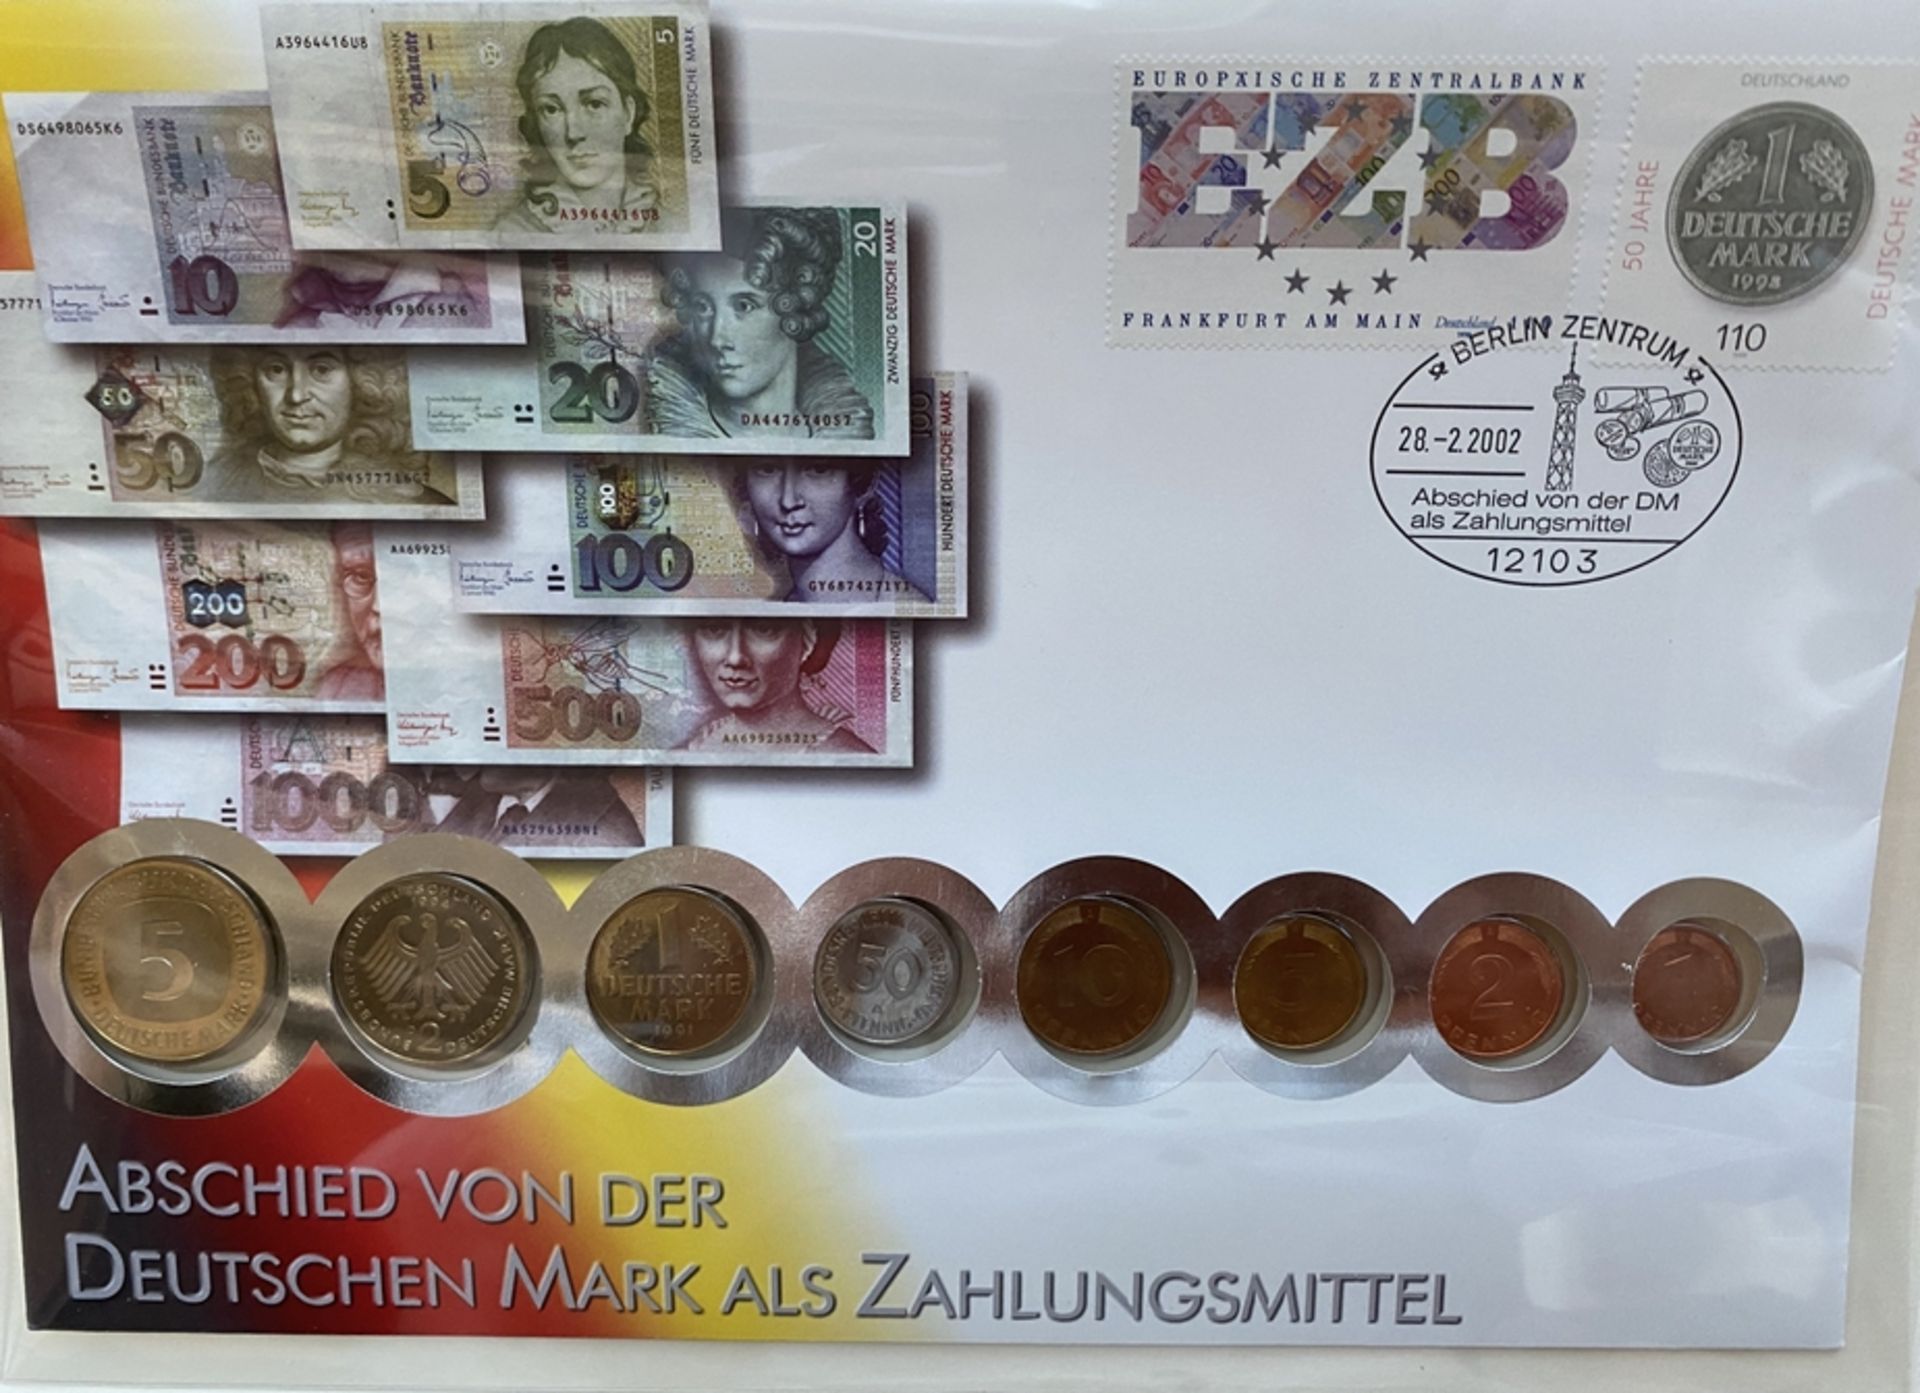 Kursmünzensatz "Abschied von der DM als Zahlungsmittel" 2002 - Image 2 of 8